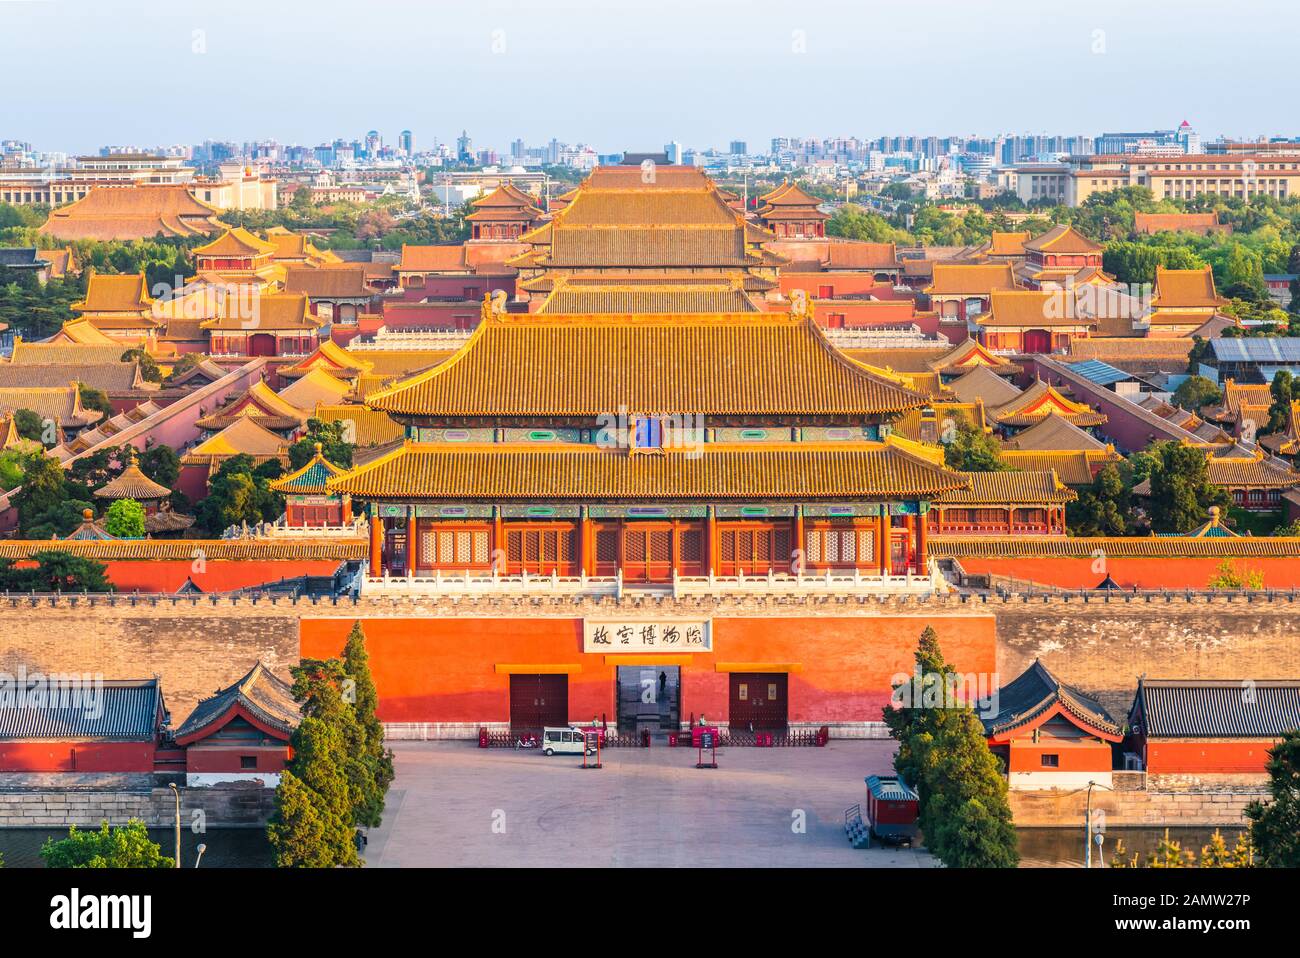 Die Verbotene Stadt vom Jingshan-Hügel aus gesehen. Der chinesische Text auf der Tablette lautet "Palastmuseum" und "könnte Tor machen". Stockfoto